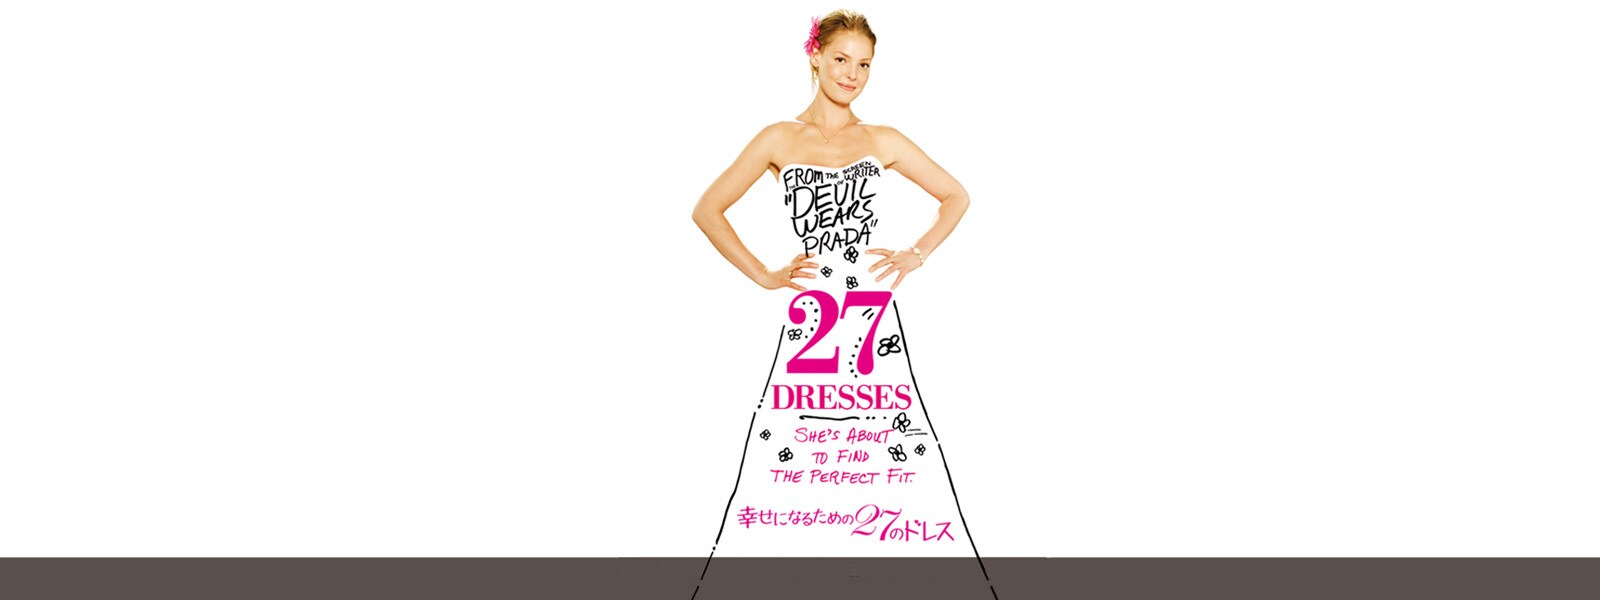 幸せになるための27のドレス | 20th Century Studios JP